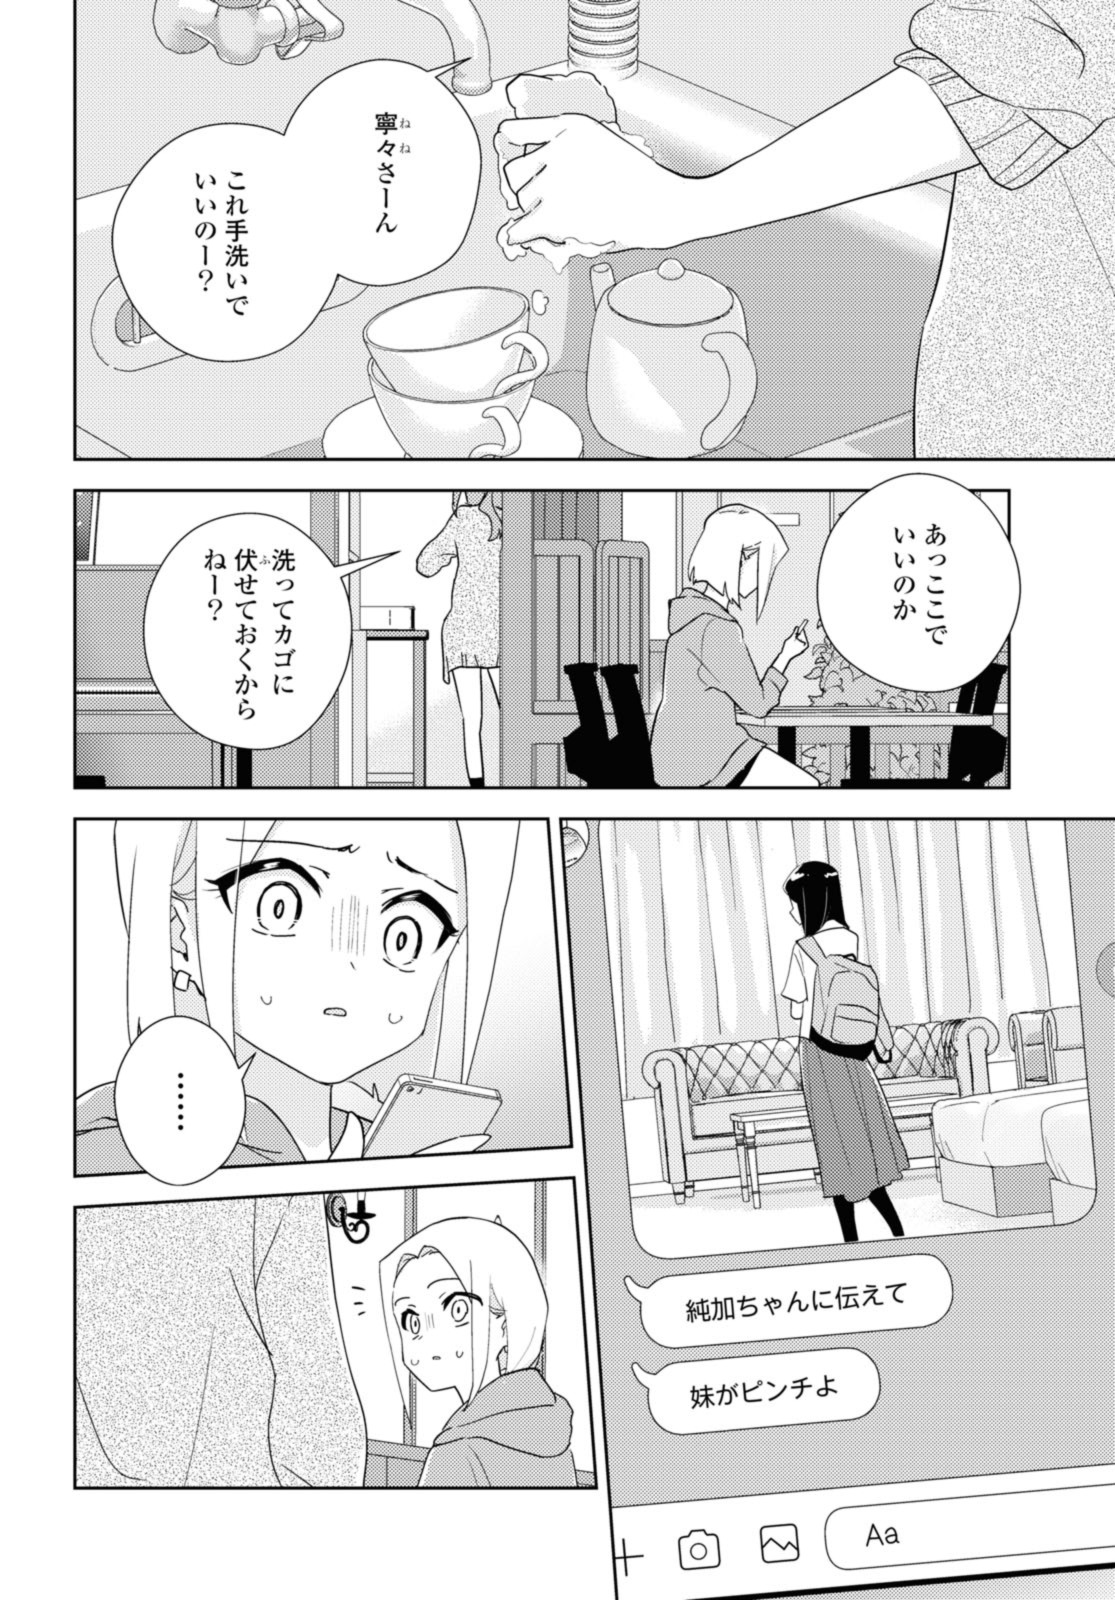 Watashi no yuri wa oshigotodesu! - Chapter 58.1 - Page 2